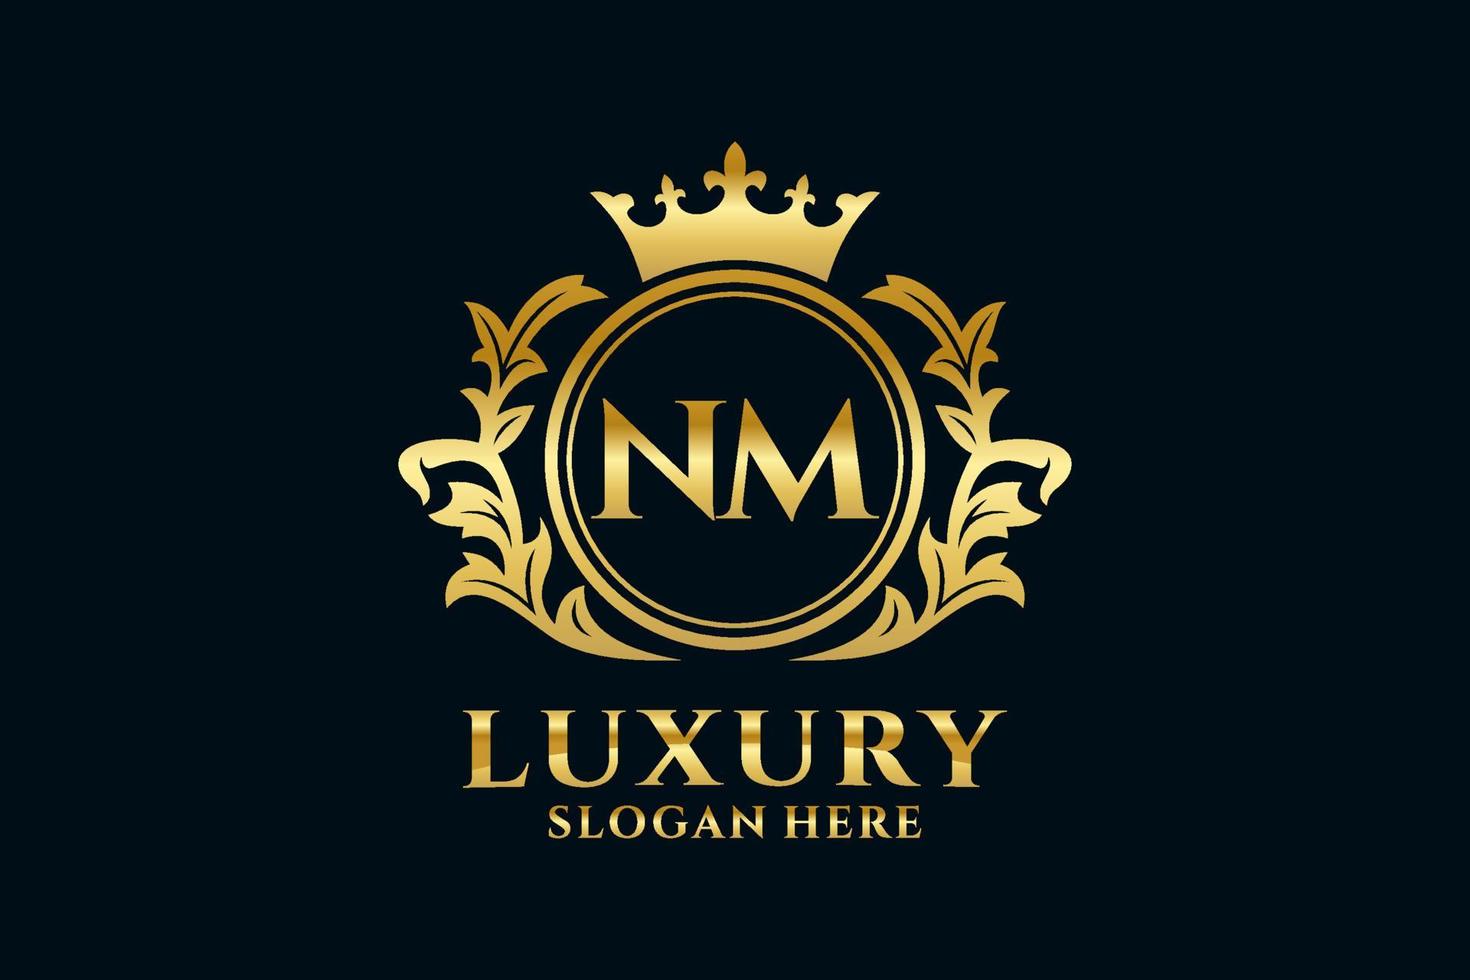 königliche Luxus-Logo-Vorlage mit anfänglichem nm-Buchstaben in Vektorgrafiken für luxuriöse Branding-Projekte und andere Vektorillustrationen. vektor